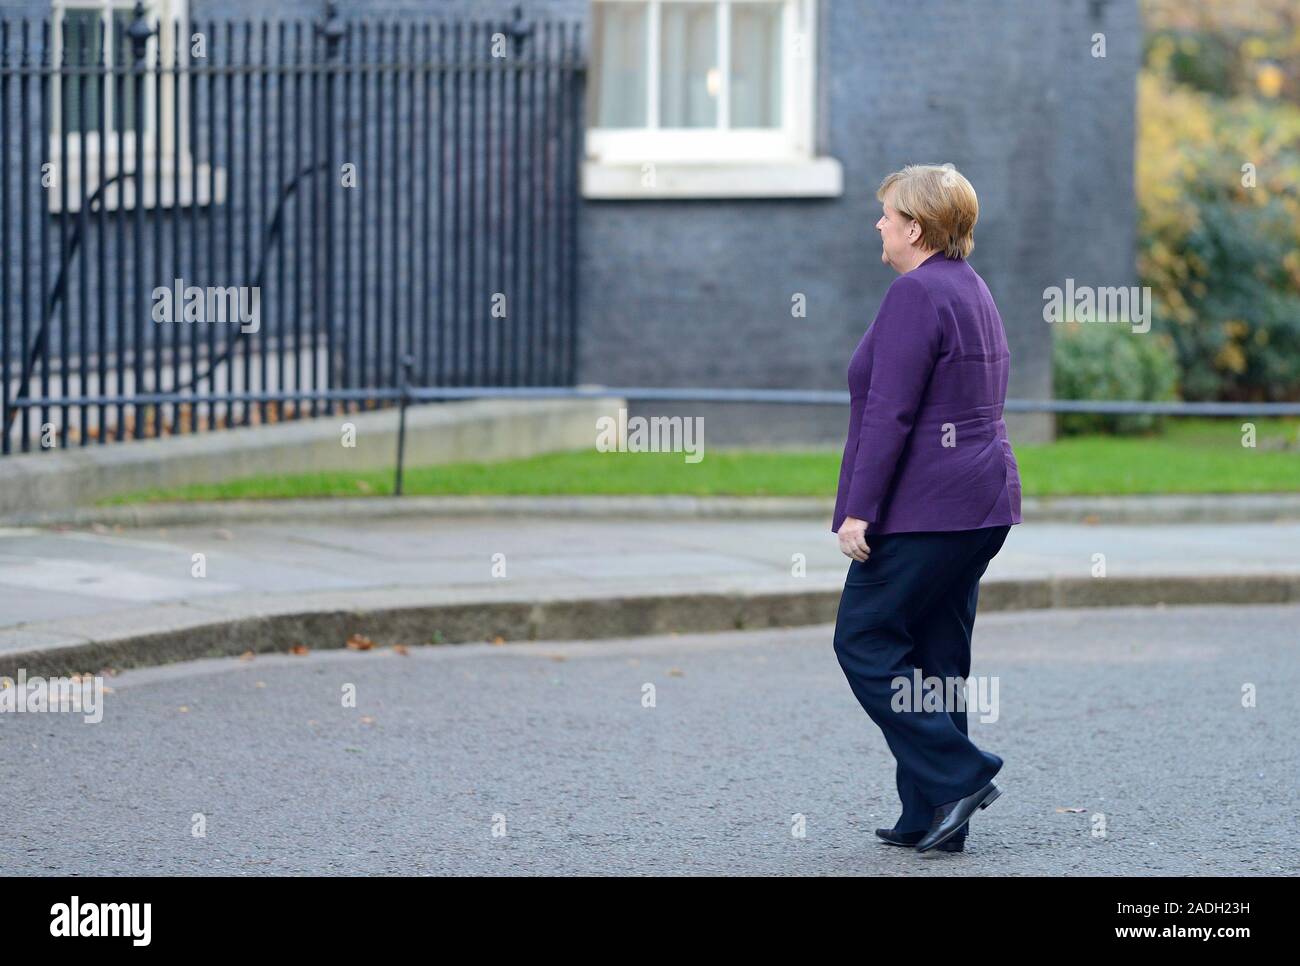 La chancelière allemande Angela Merkel arrive à Downing Street pour une réunion de dirigeants de l'OTAN, 3e Mai 2019 Banque D'Images